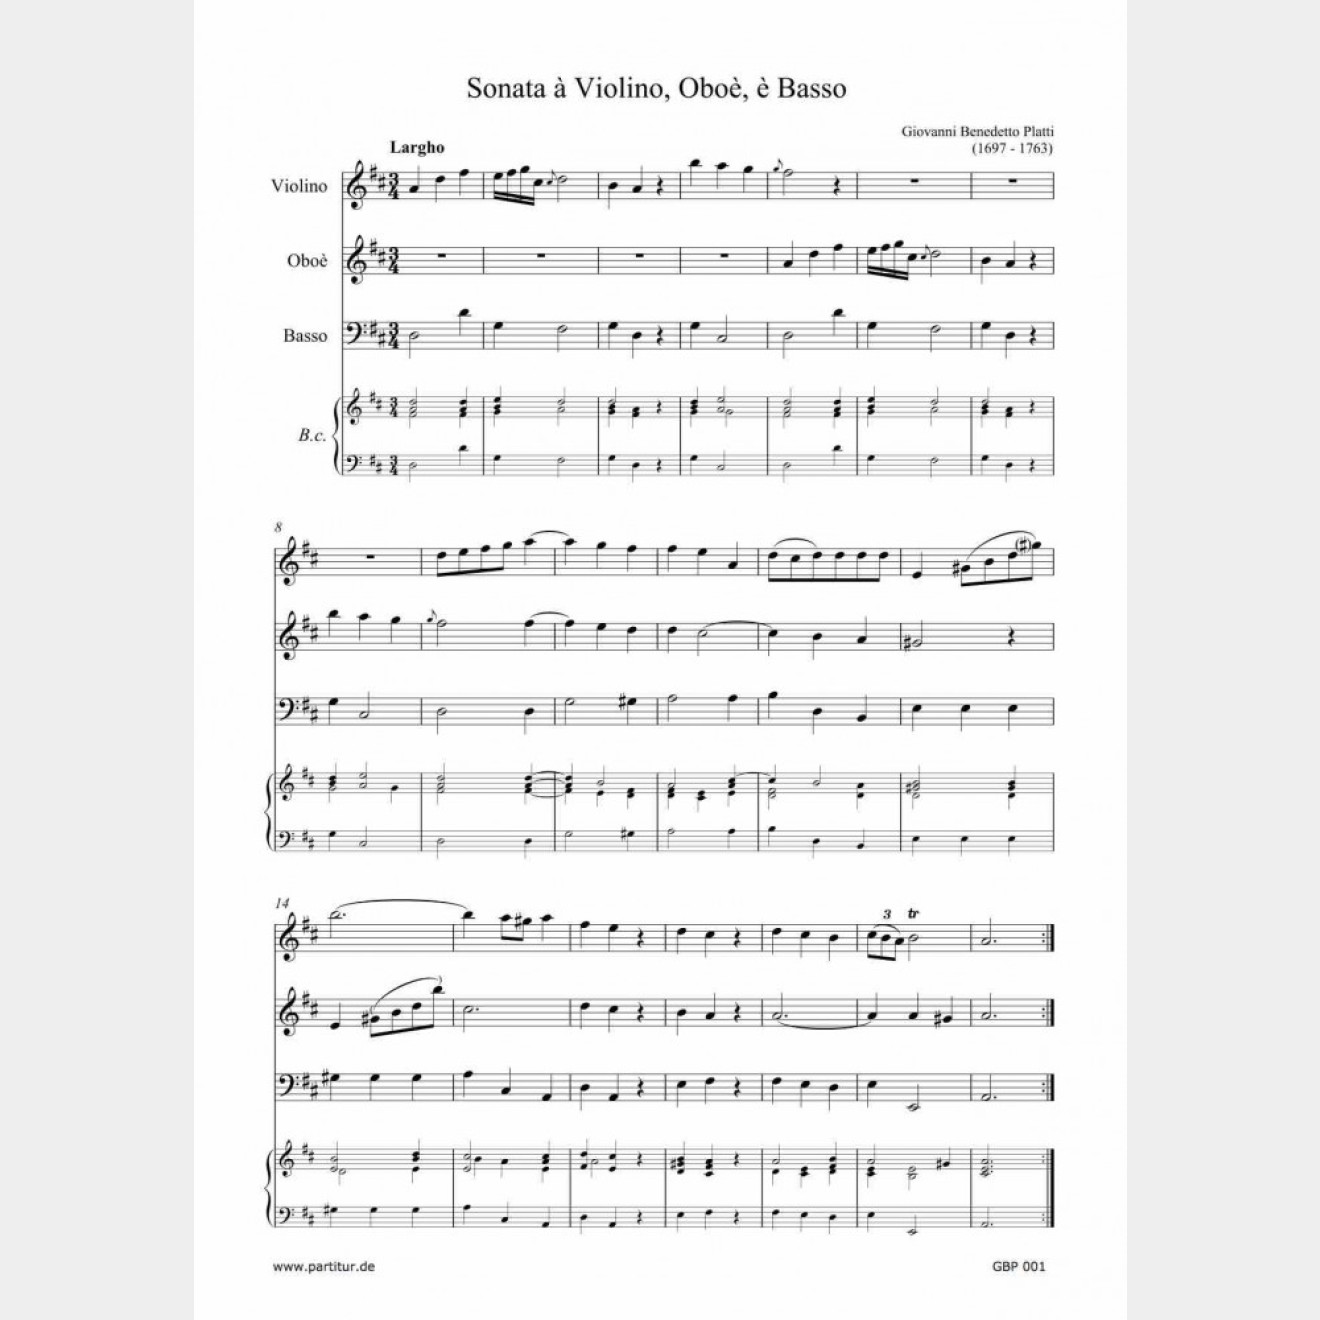 Sonata à Violino, Oboè è Basso (D-major, WD 682)